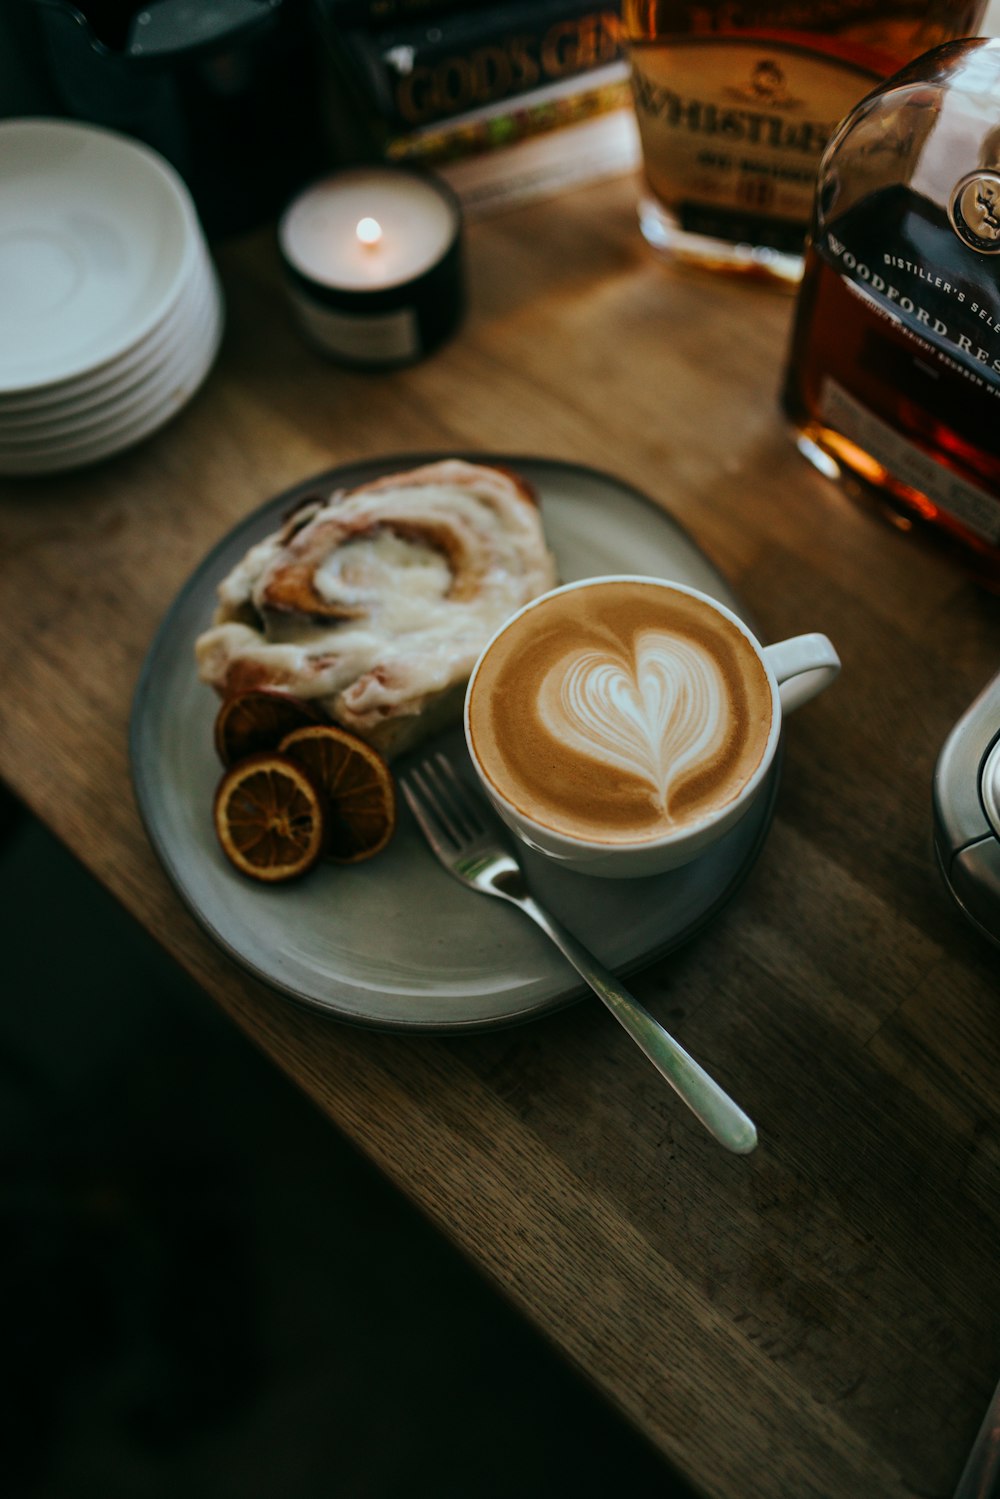 Cappuccino in weißer Keramiktasse auf Untertasse neben Edelstahllöffel